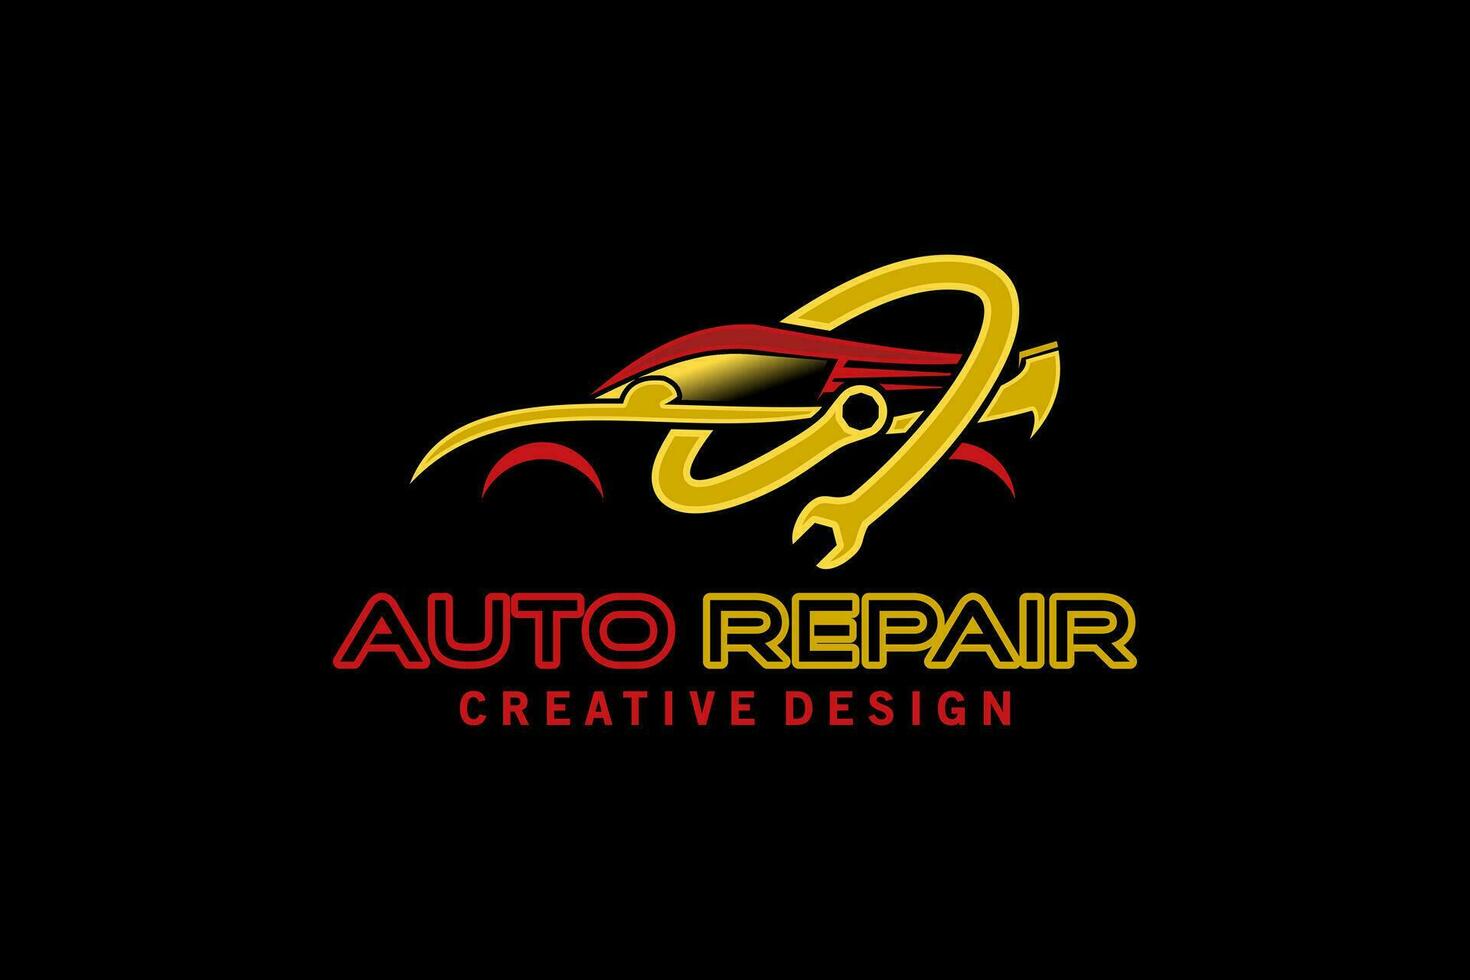 Auto repair logo design, modern sports car repair service logo 27008992 ...